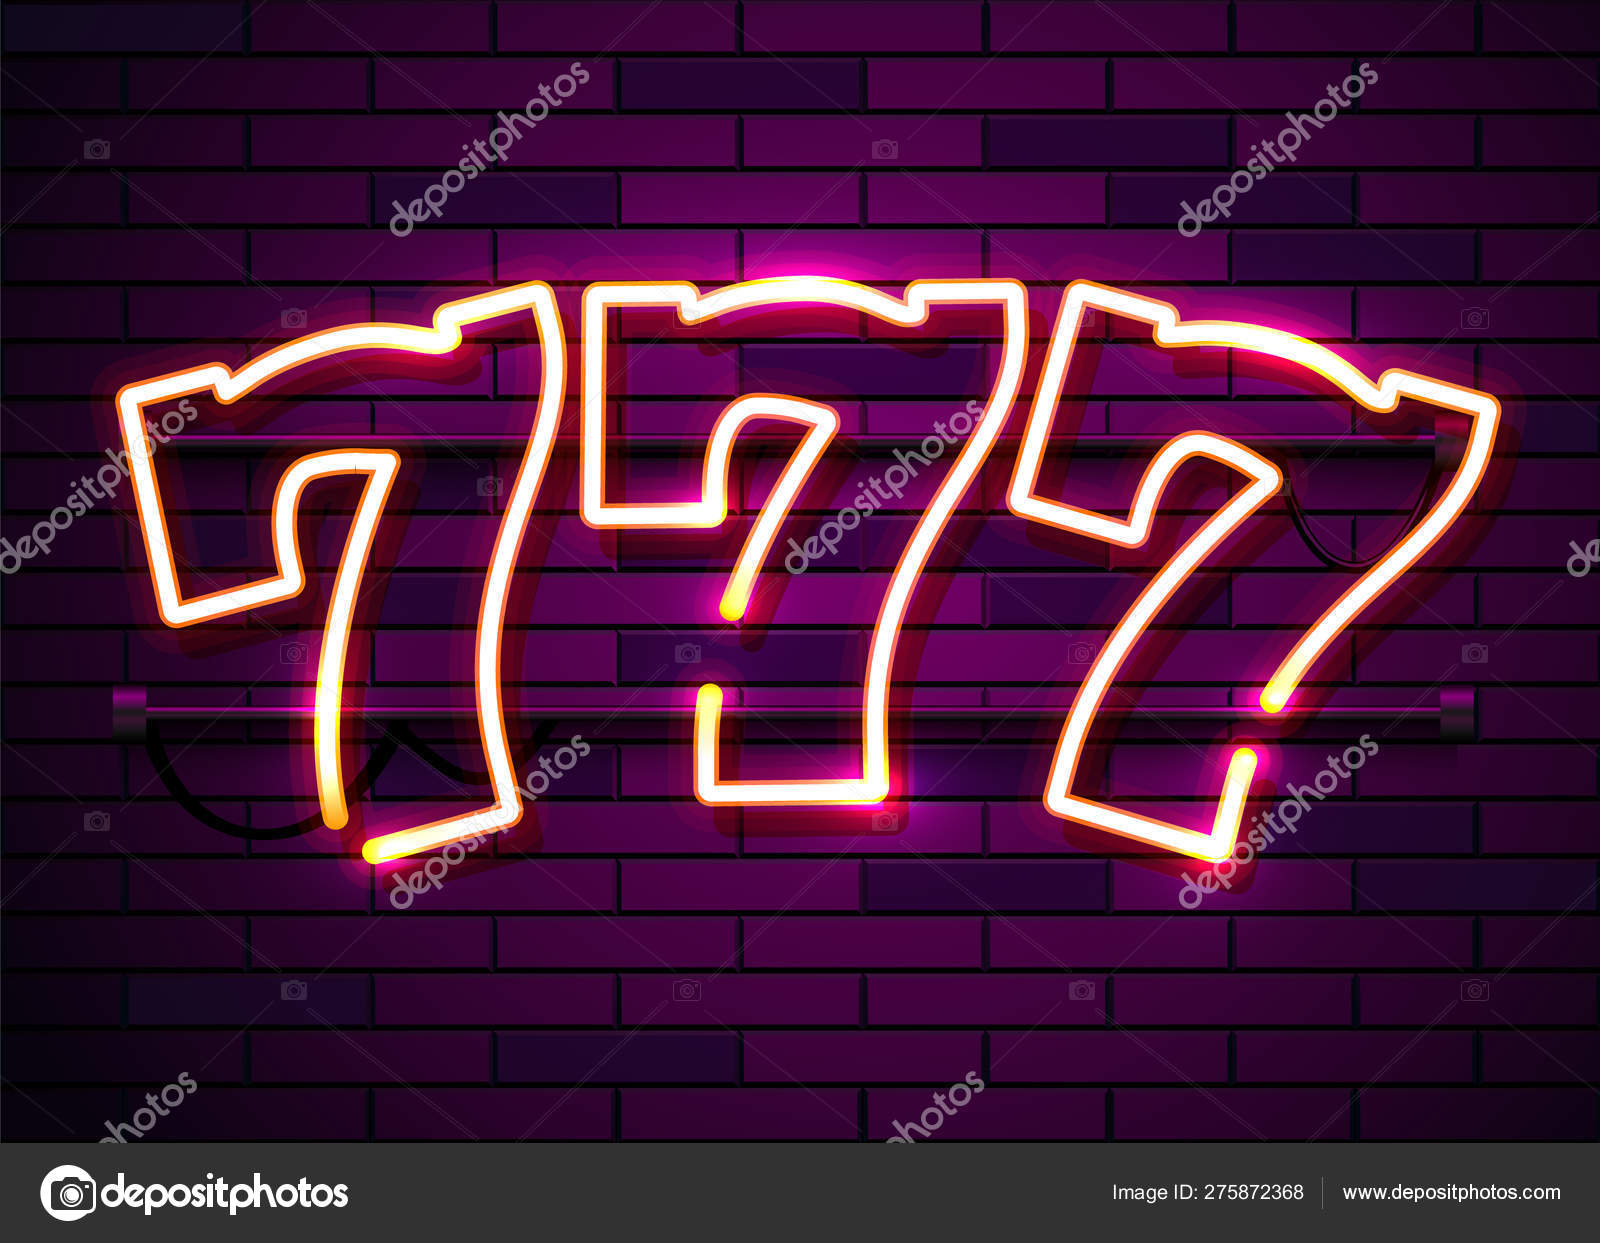 Ingenieurs Cirkel de studie Neon 777 slots sign. Casino neon signboard. Online casino concept. Stock  Vector Image by ©hobbit_art #275872368